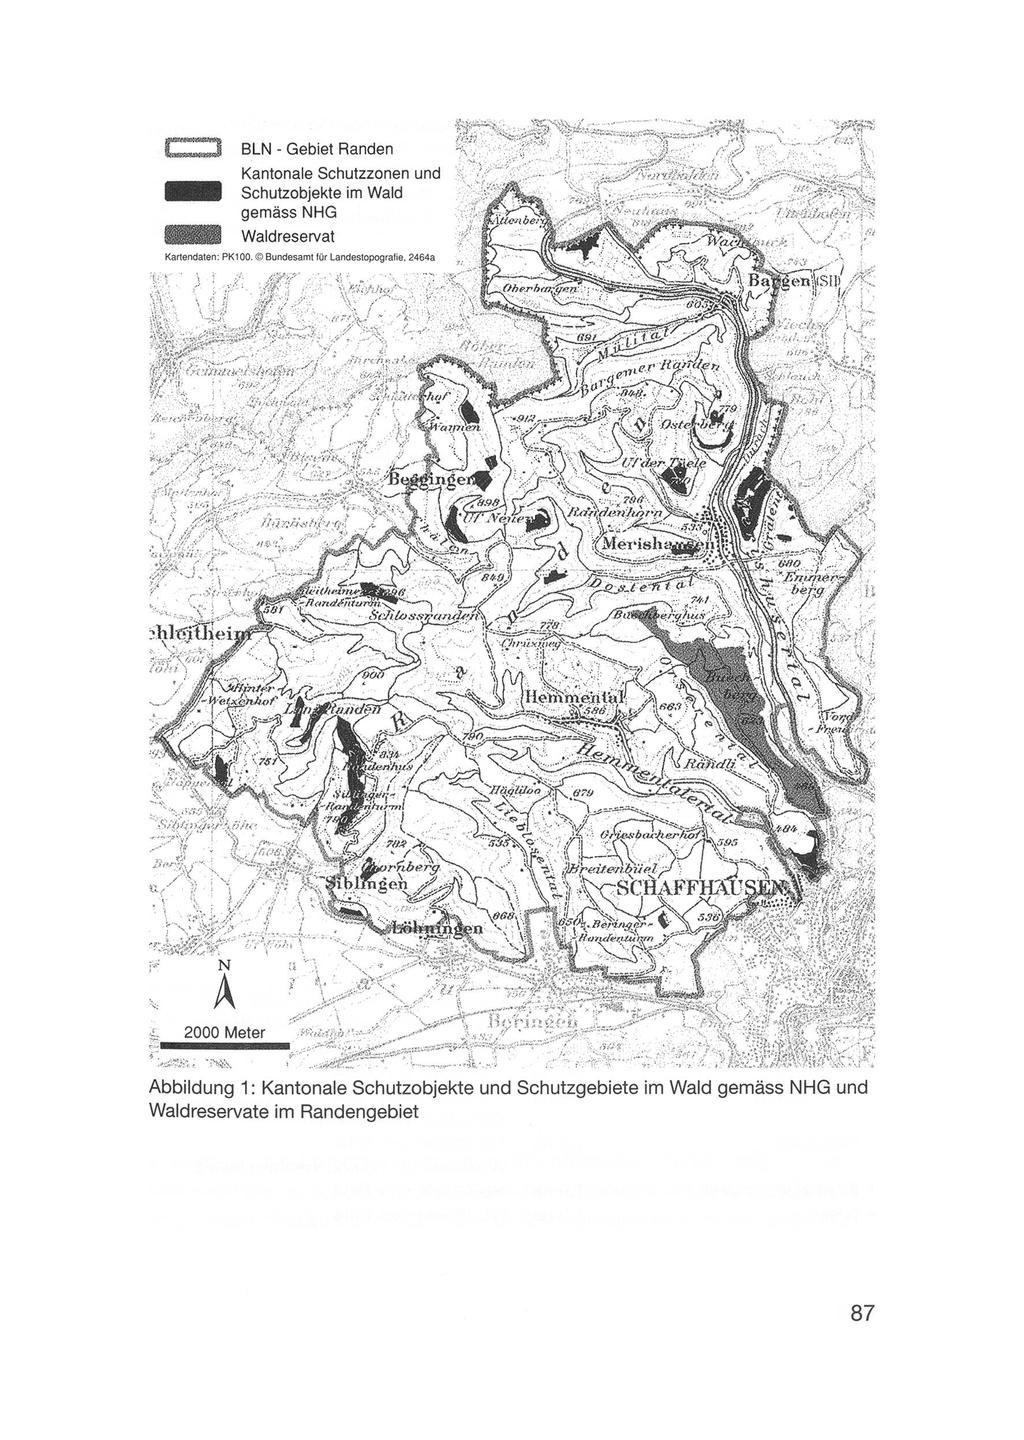 BLN - Gebiet Randen Kantonale Schutzzonen und HIB Schutzobjekte im Wald gemäss NHG 811111 Waldreservat Karlendaten: PK100. Bundesamt für Landestopografie, 2464a ".